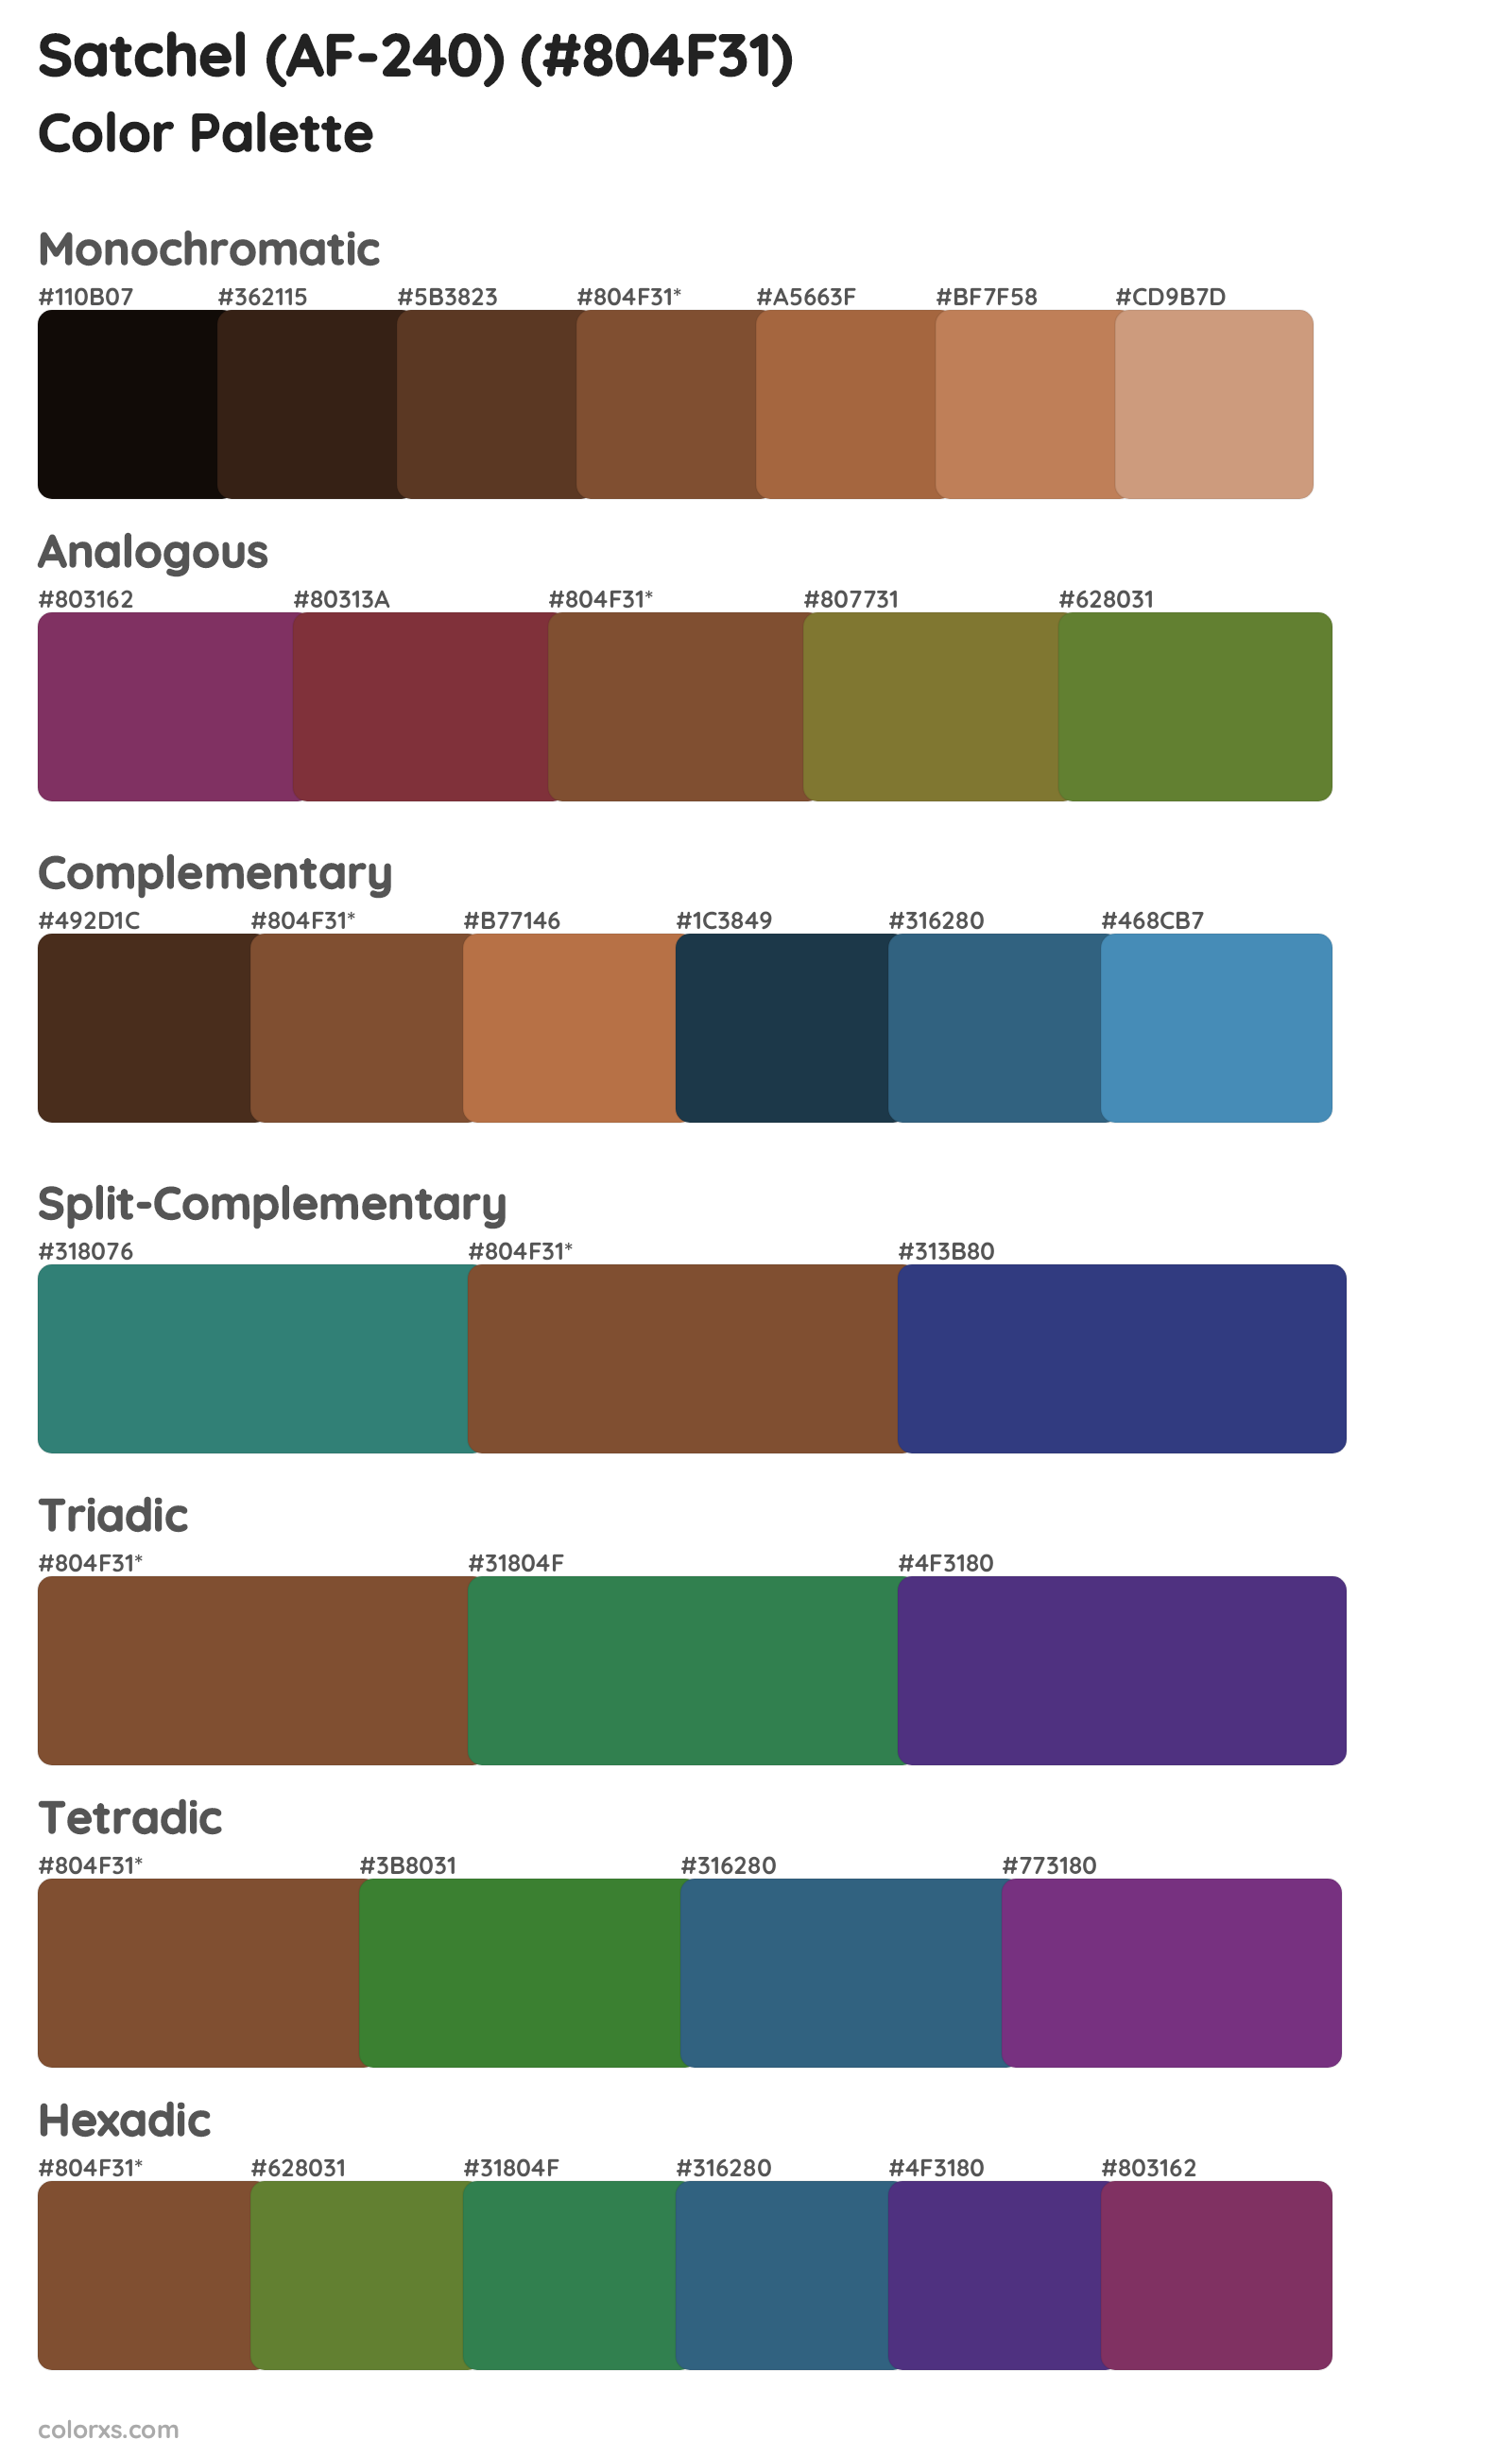 Satchel (AF-240) Color Scheme Palettes